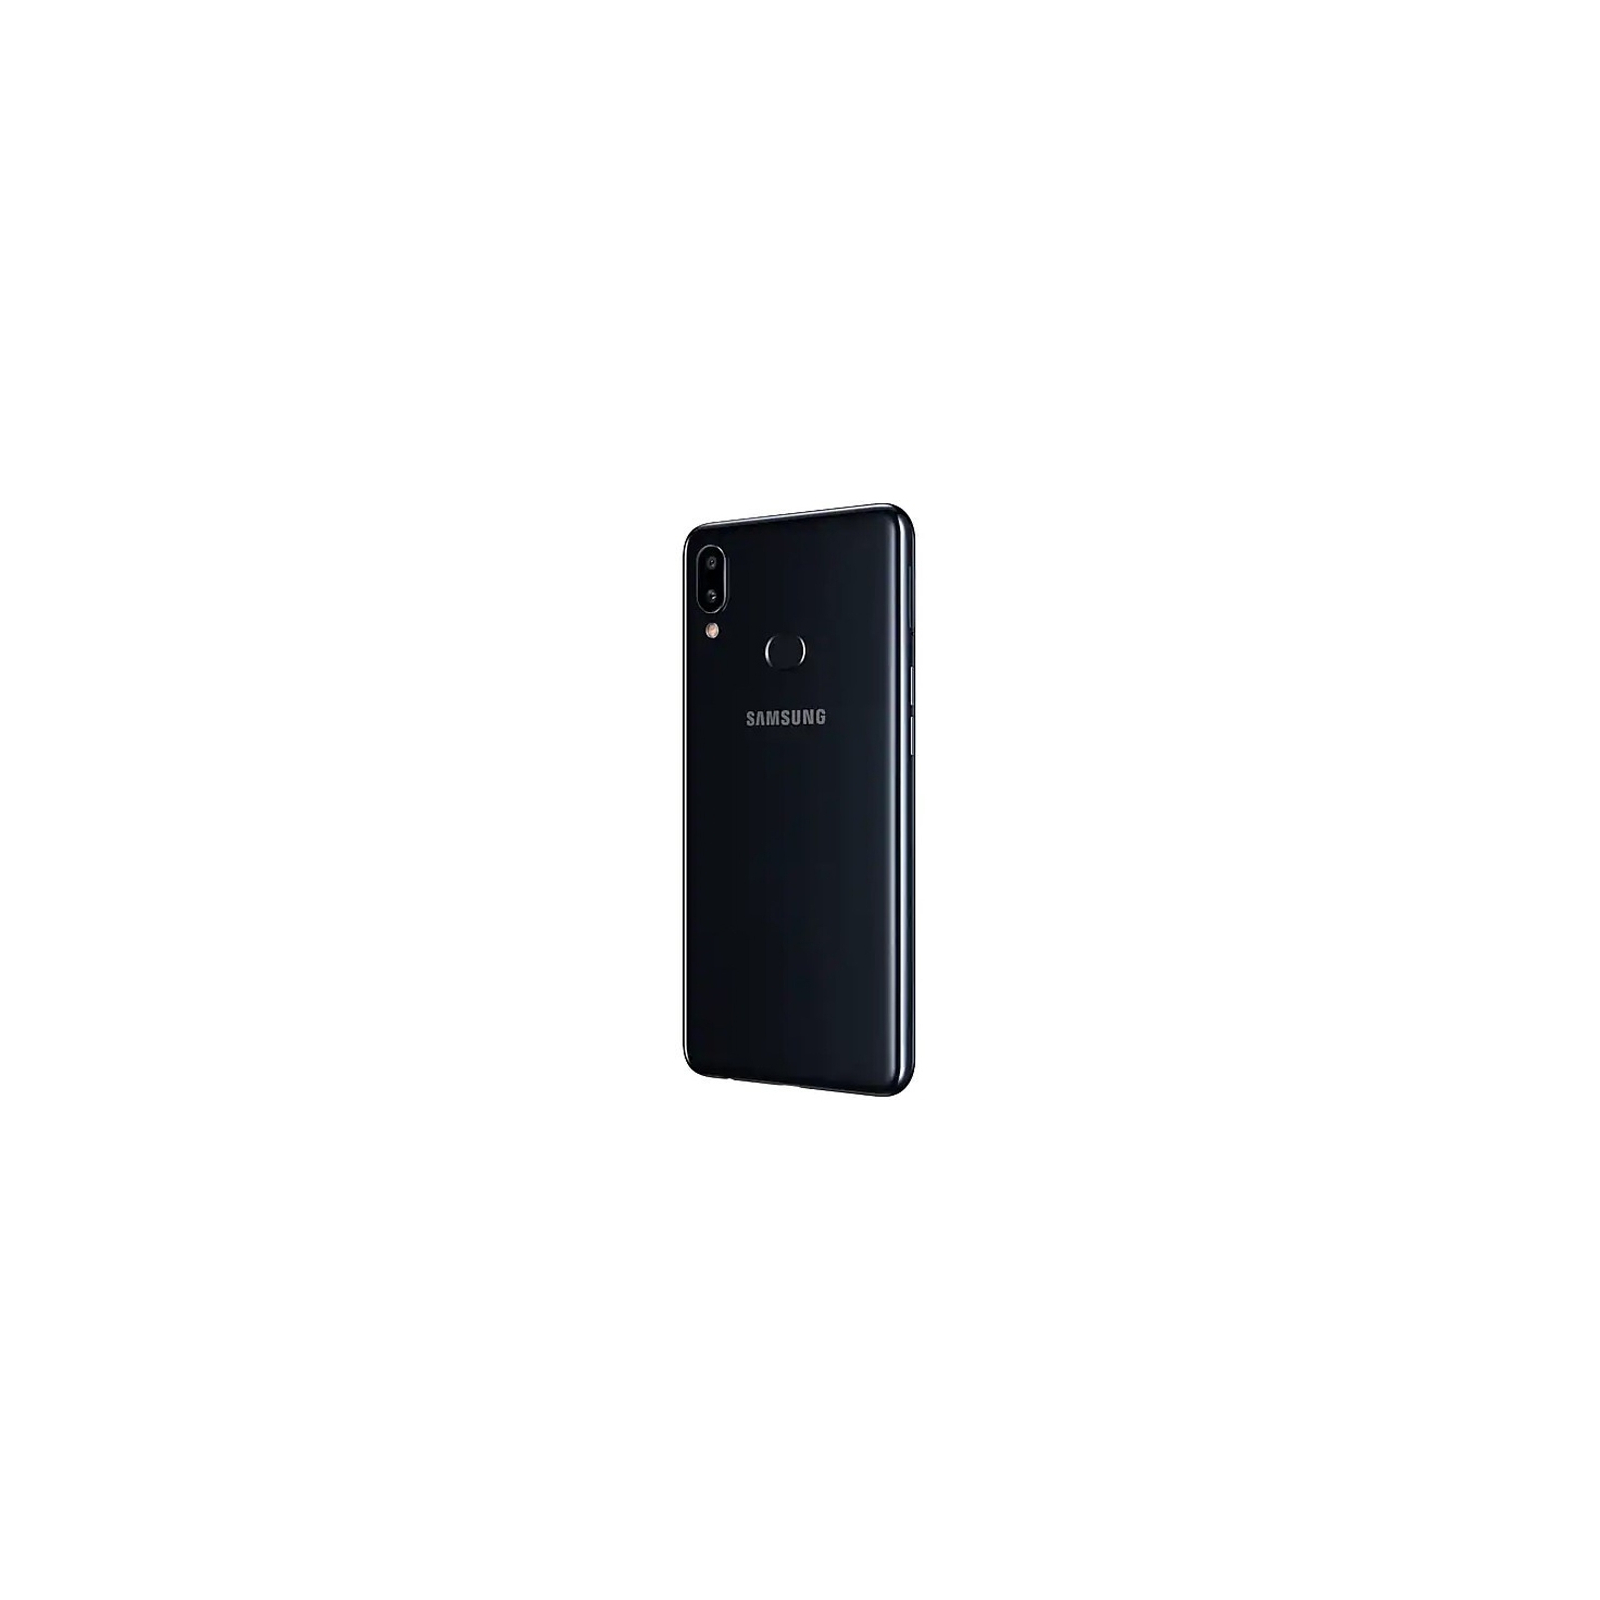 Мобильный телефон Samsung SM-A107F (Galaxy A10s) Black (SM-A107FZKDSEK) изображение 5